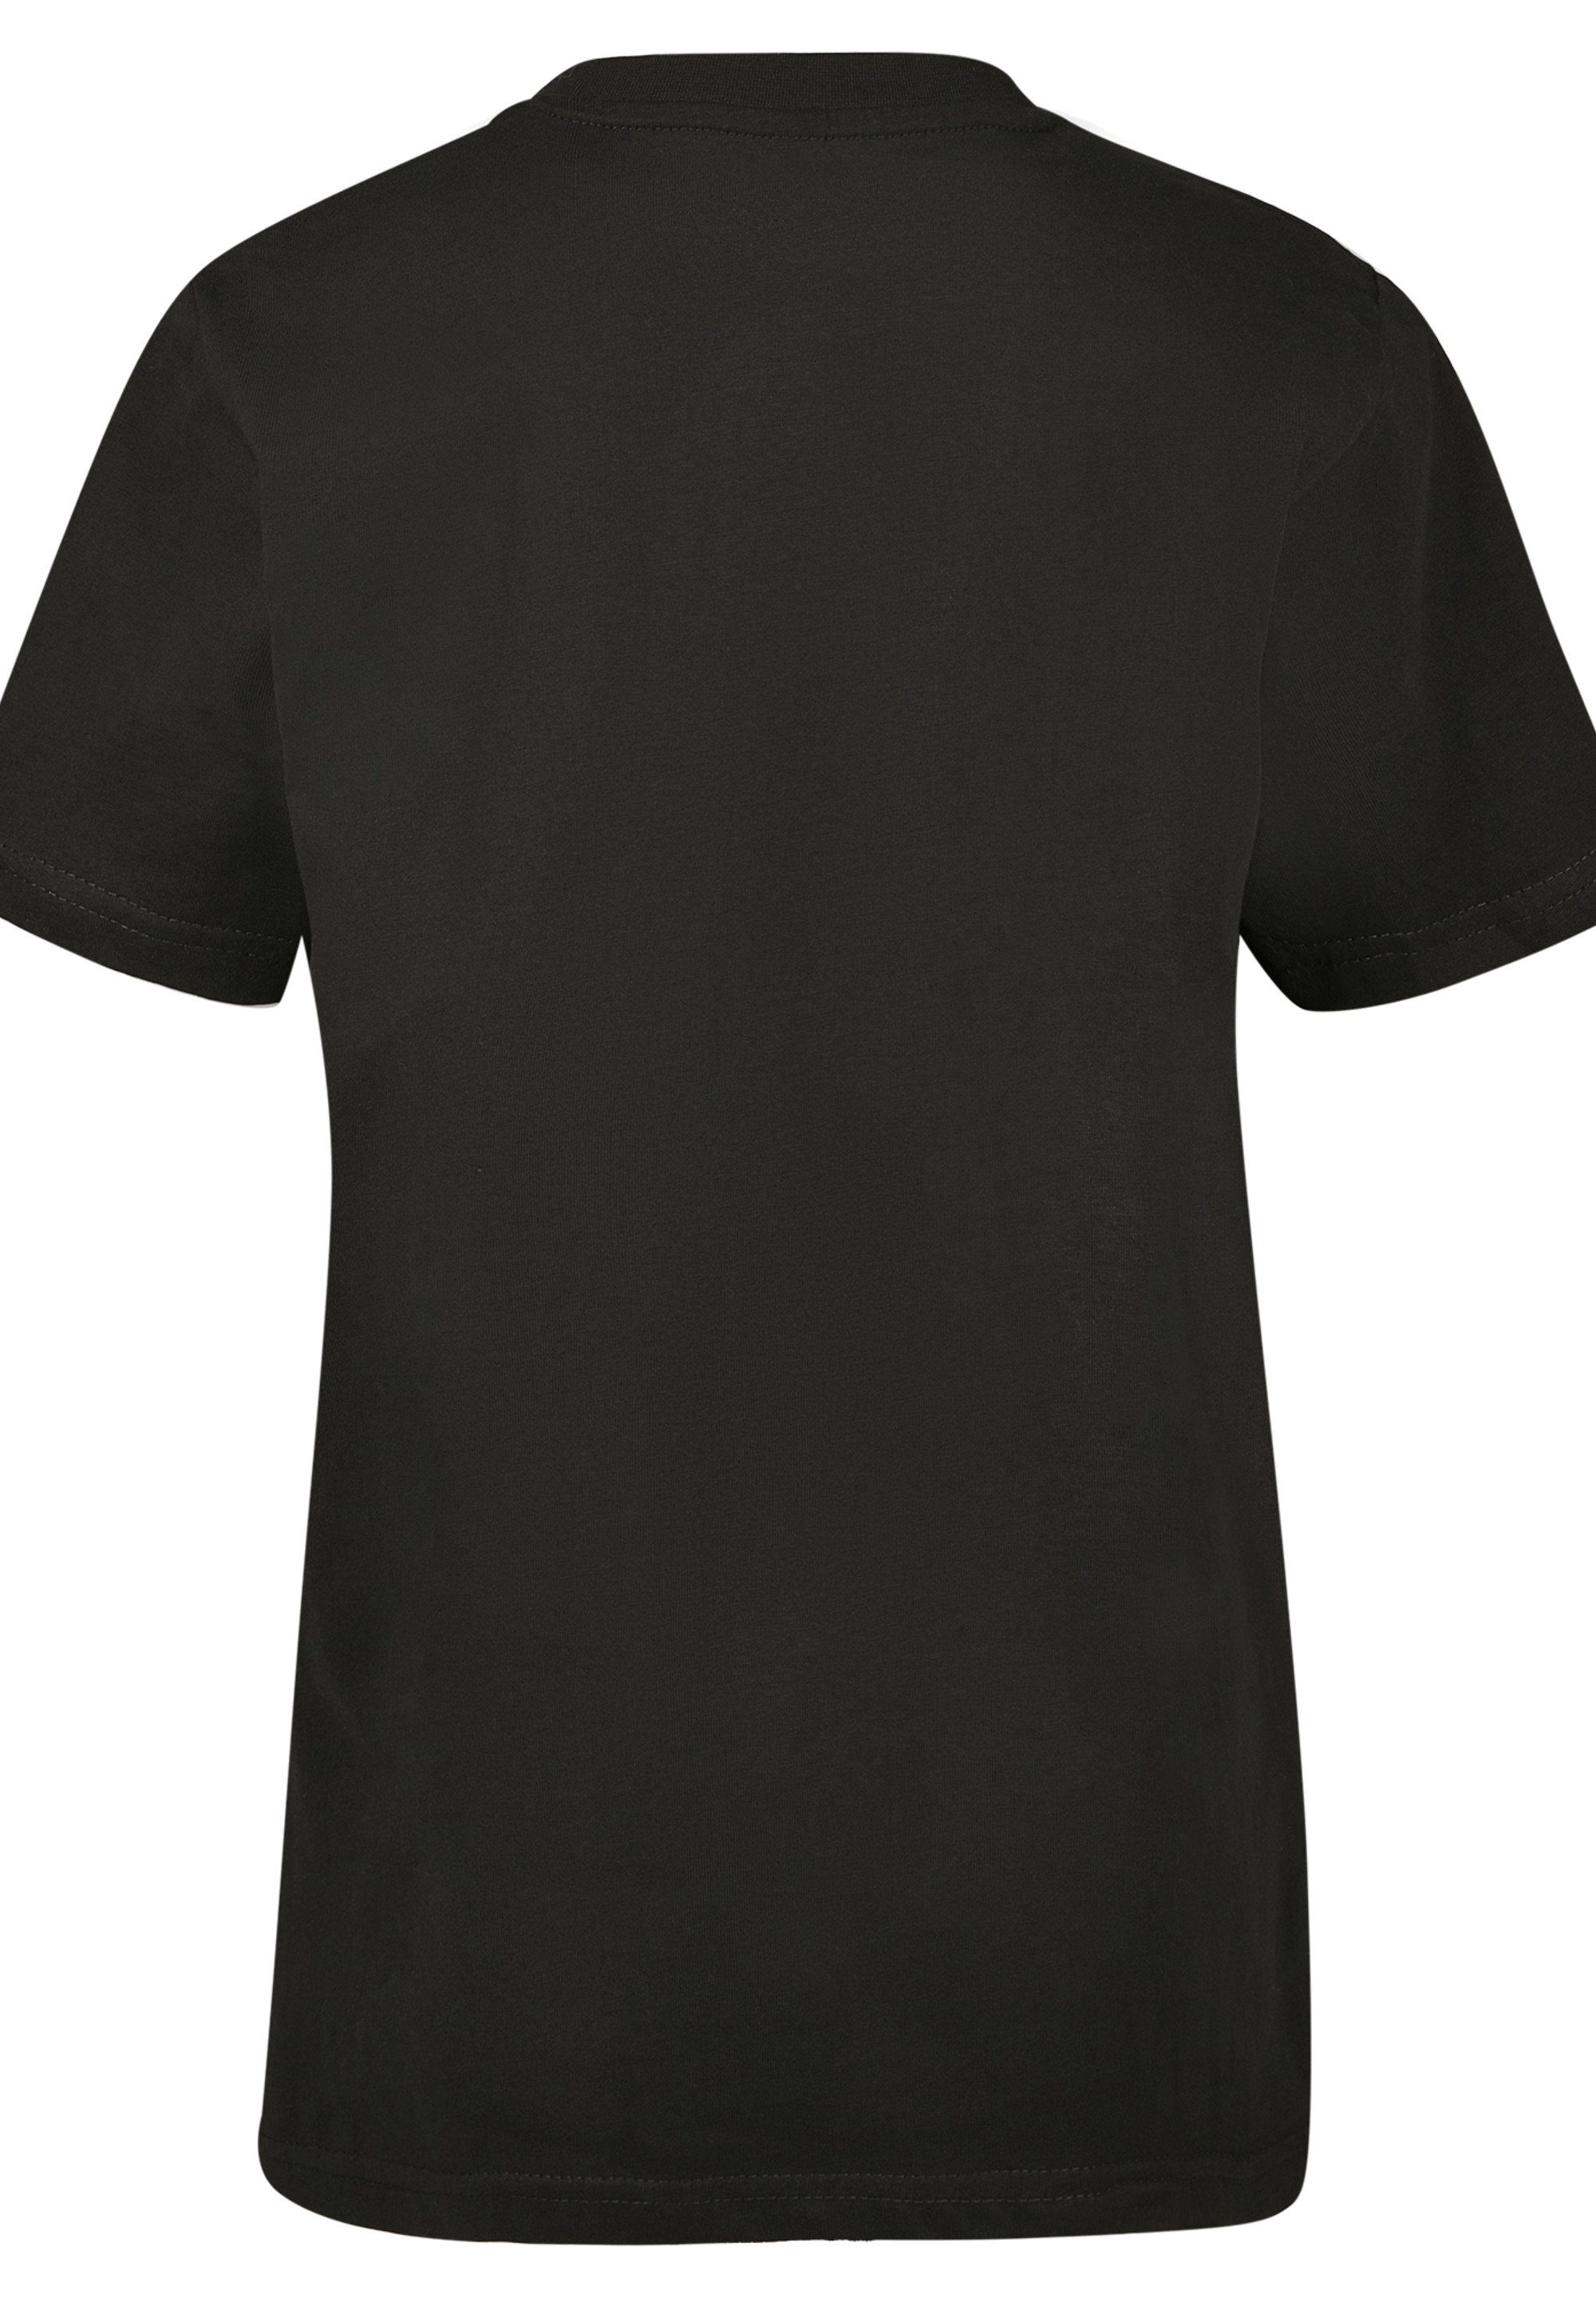 Modern Unisex Logo T-Shirt F4NT4STIC Kinder,Premium Mädchen,Bedruckt NASA Black Merch,Jungen,